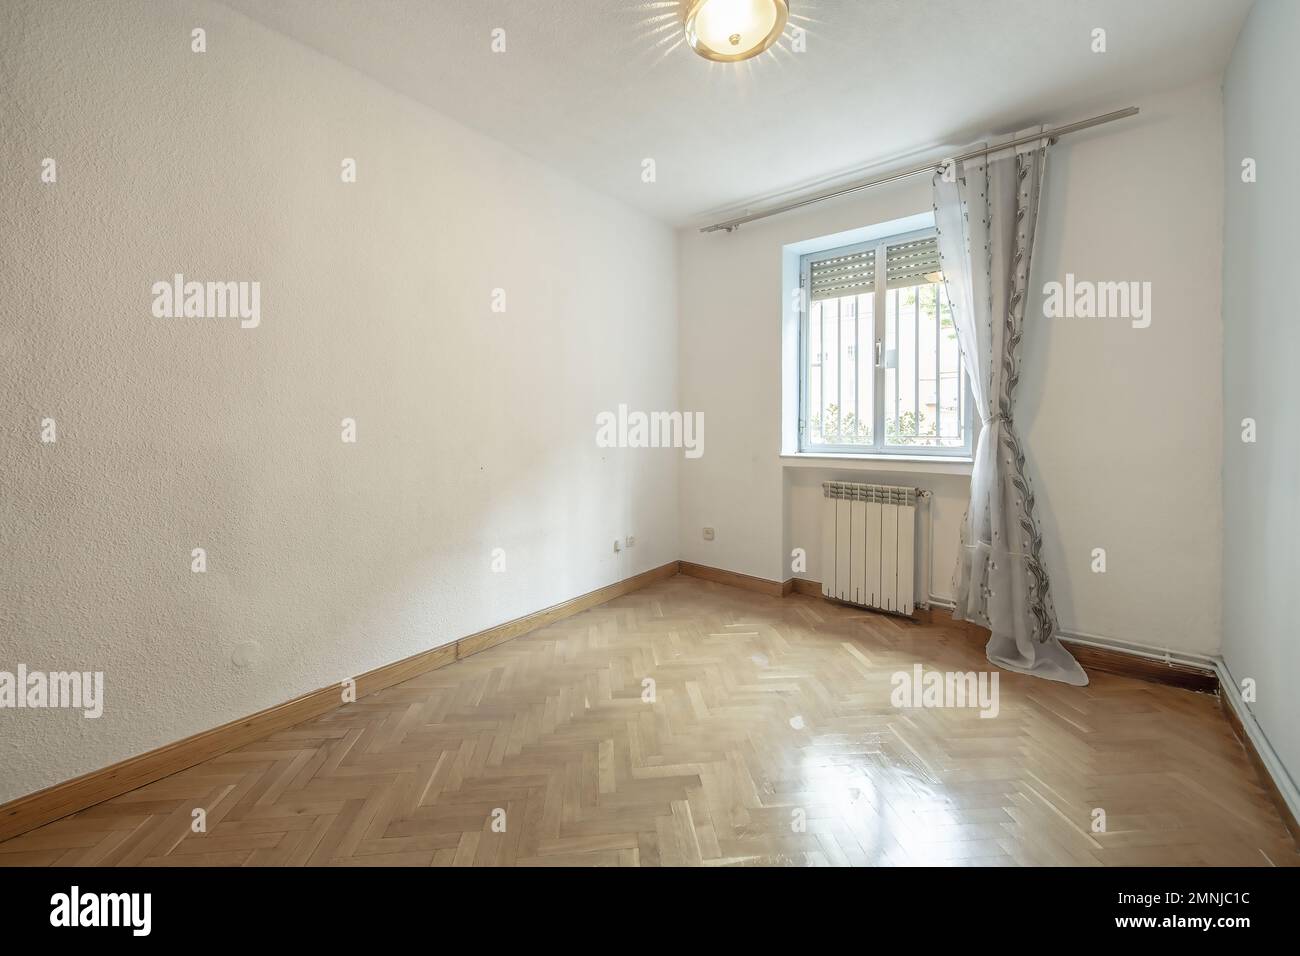 Camera vuota con pavimenti in legno di quercia francese, pareti dipinte in crema, una finestra bianca in alluminio con barre all'esterno e teli tirati. Foto Stock